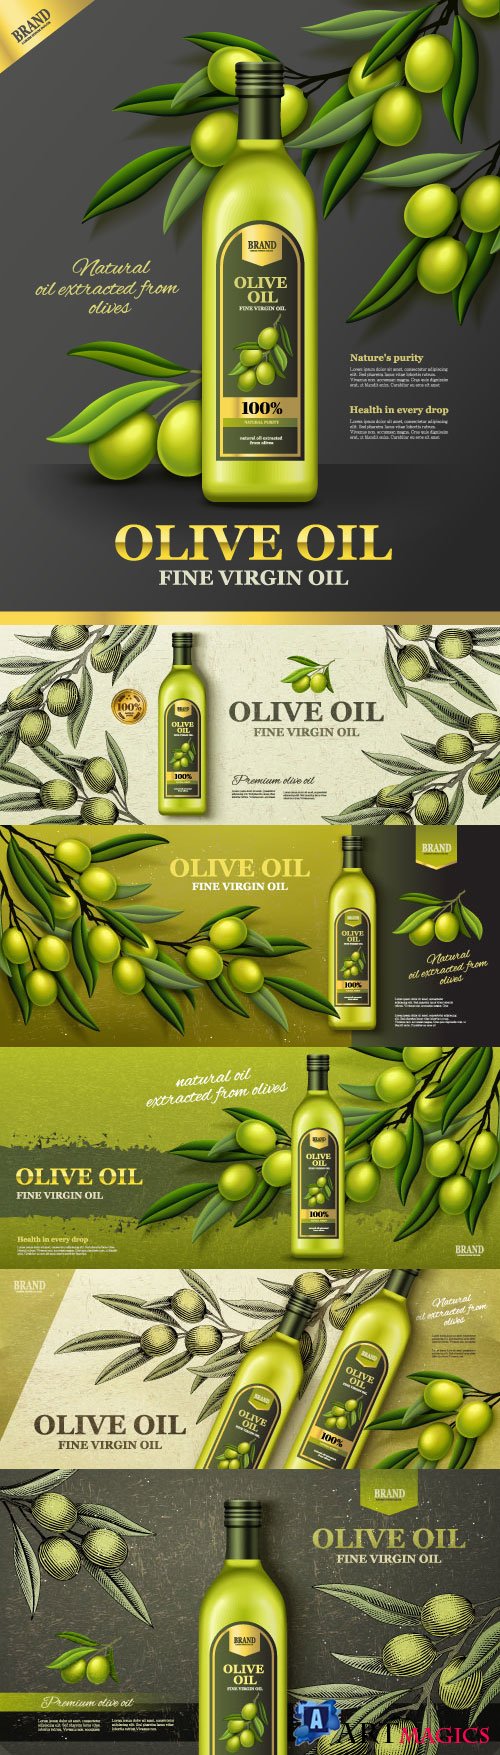 Olive oil banner vector ads